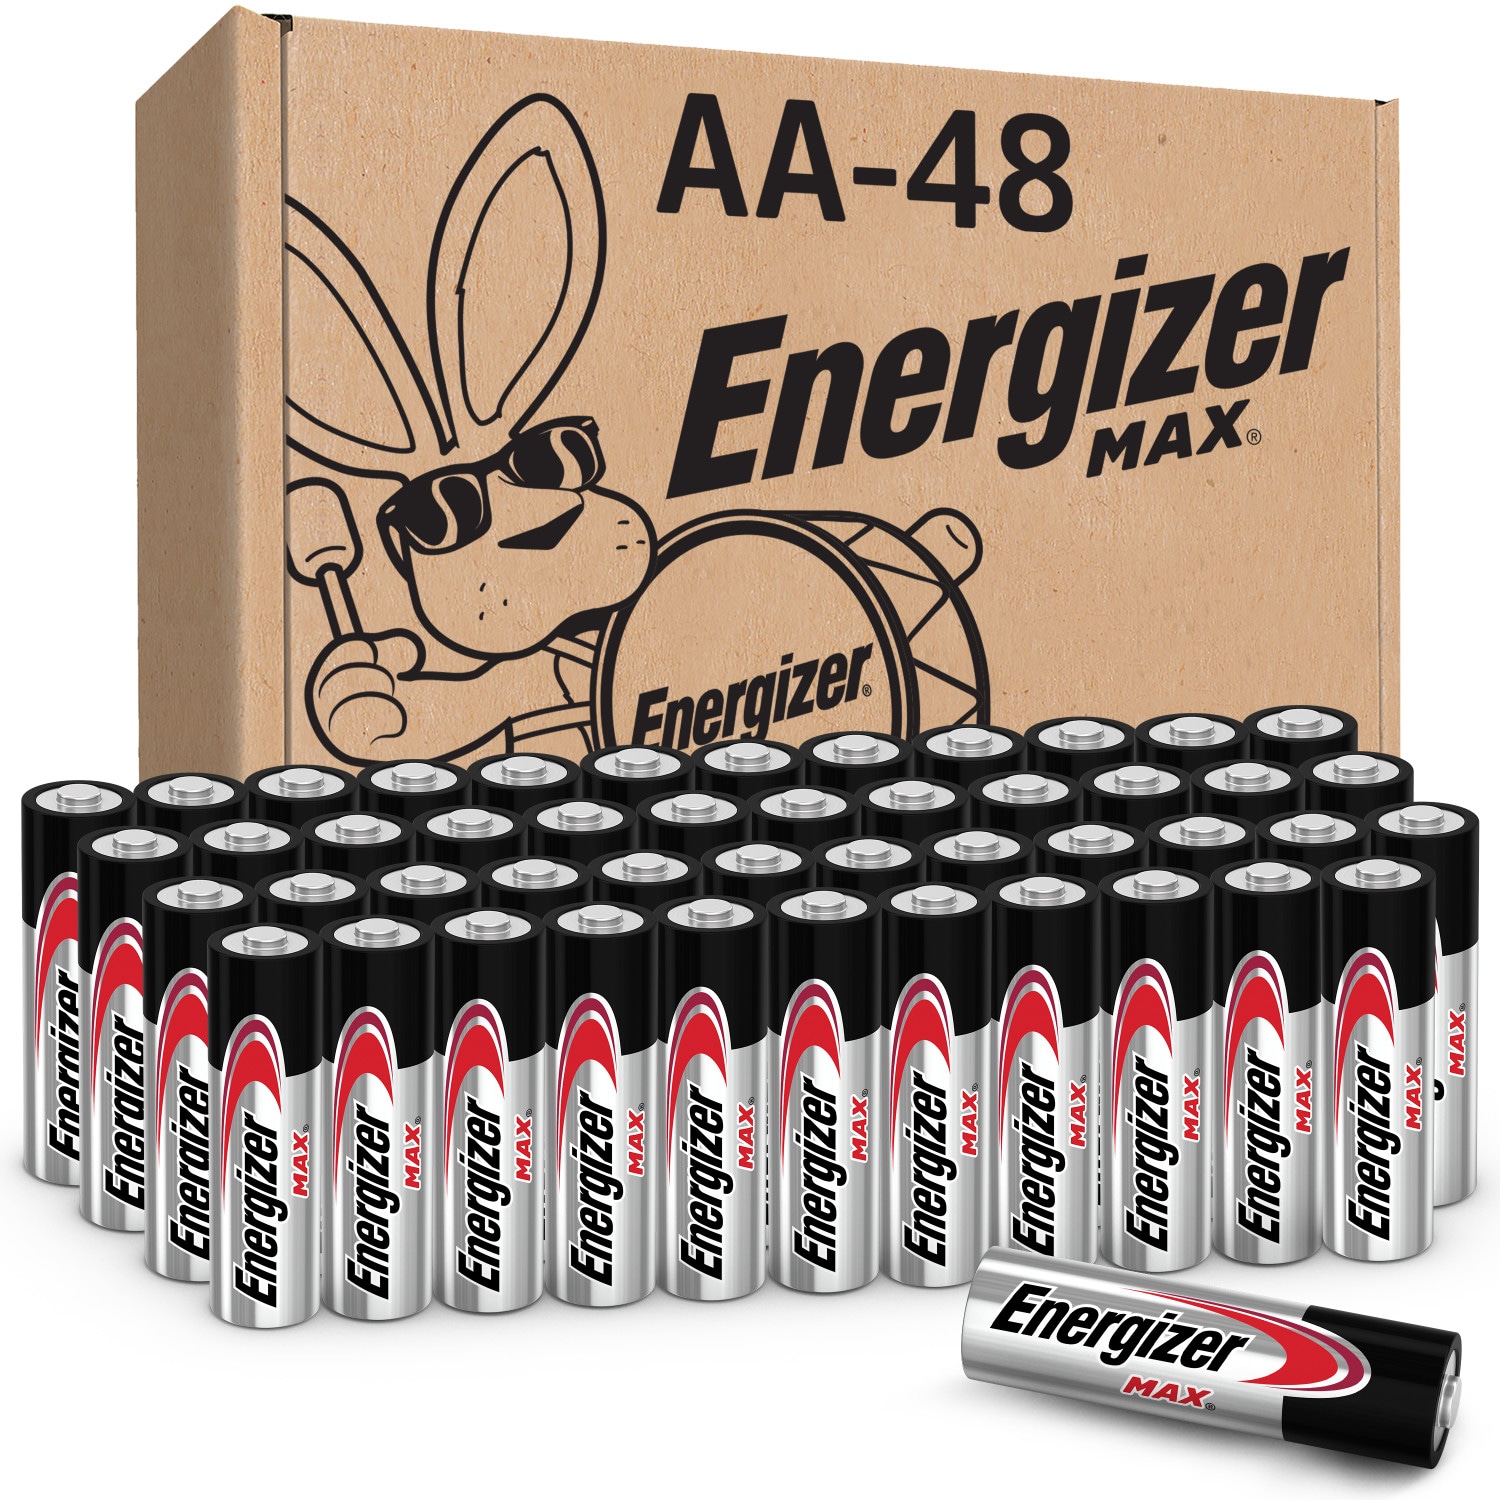 Energizer Max PowerSeal Alkaline AA Batteries - 48 Count